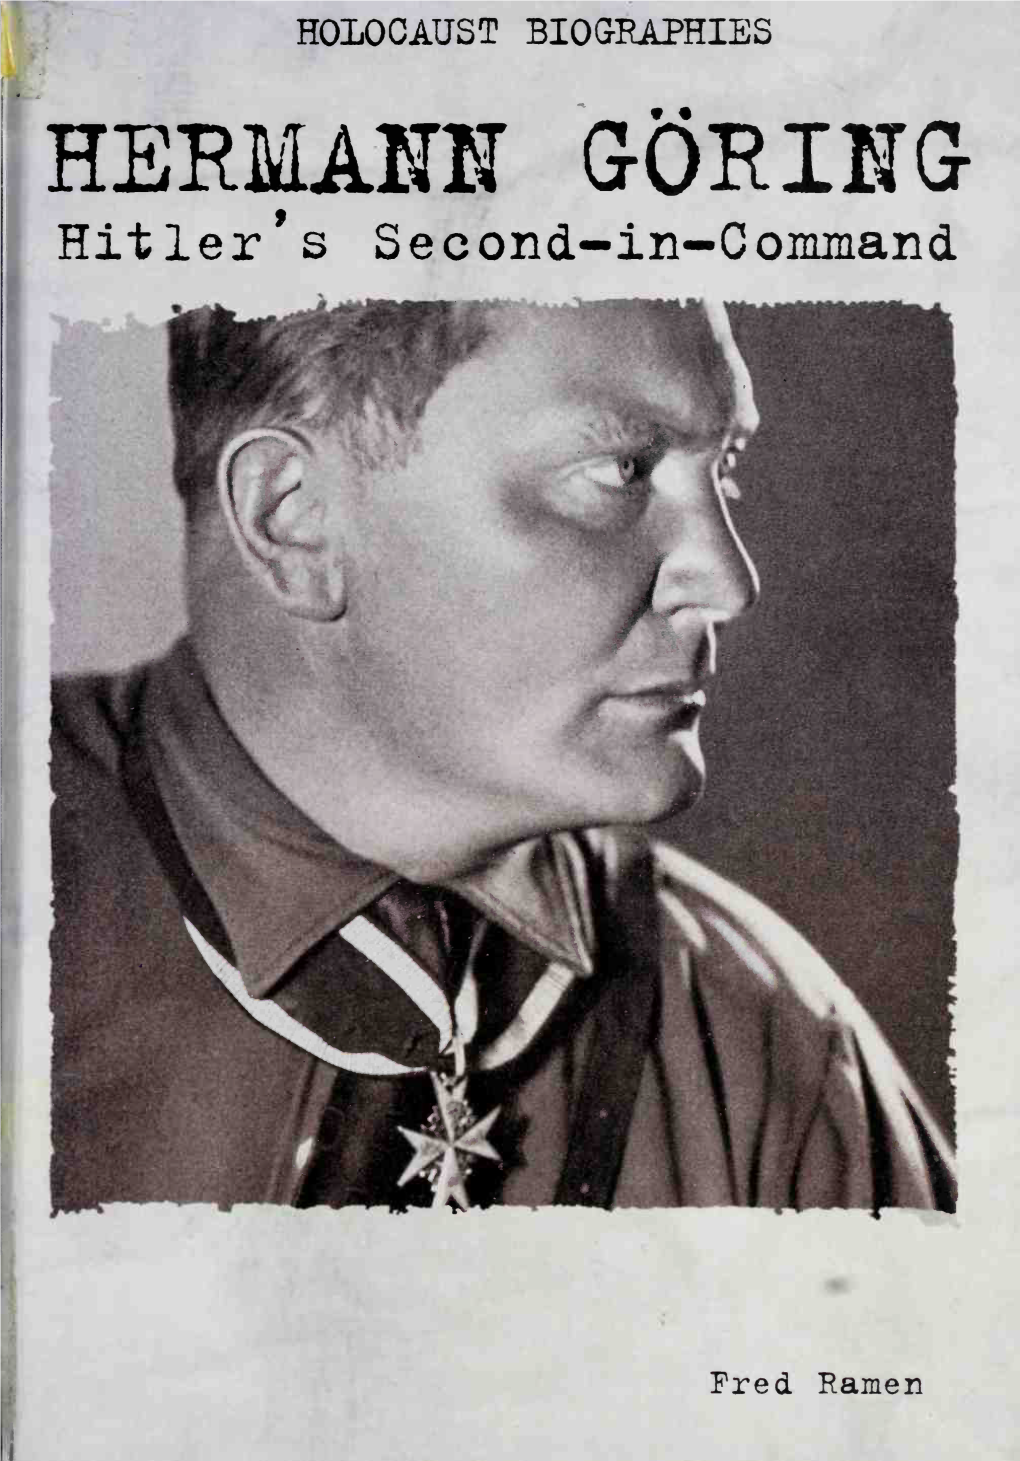 HERMANN GORING Hitler's Second-In-Command